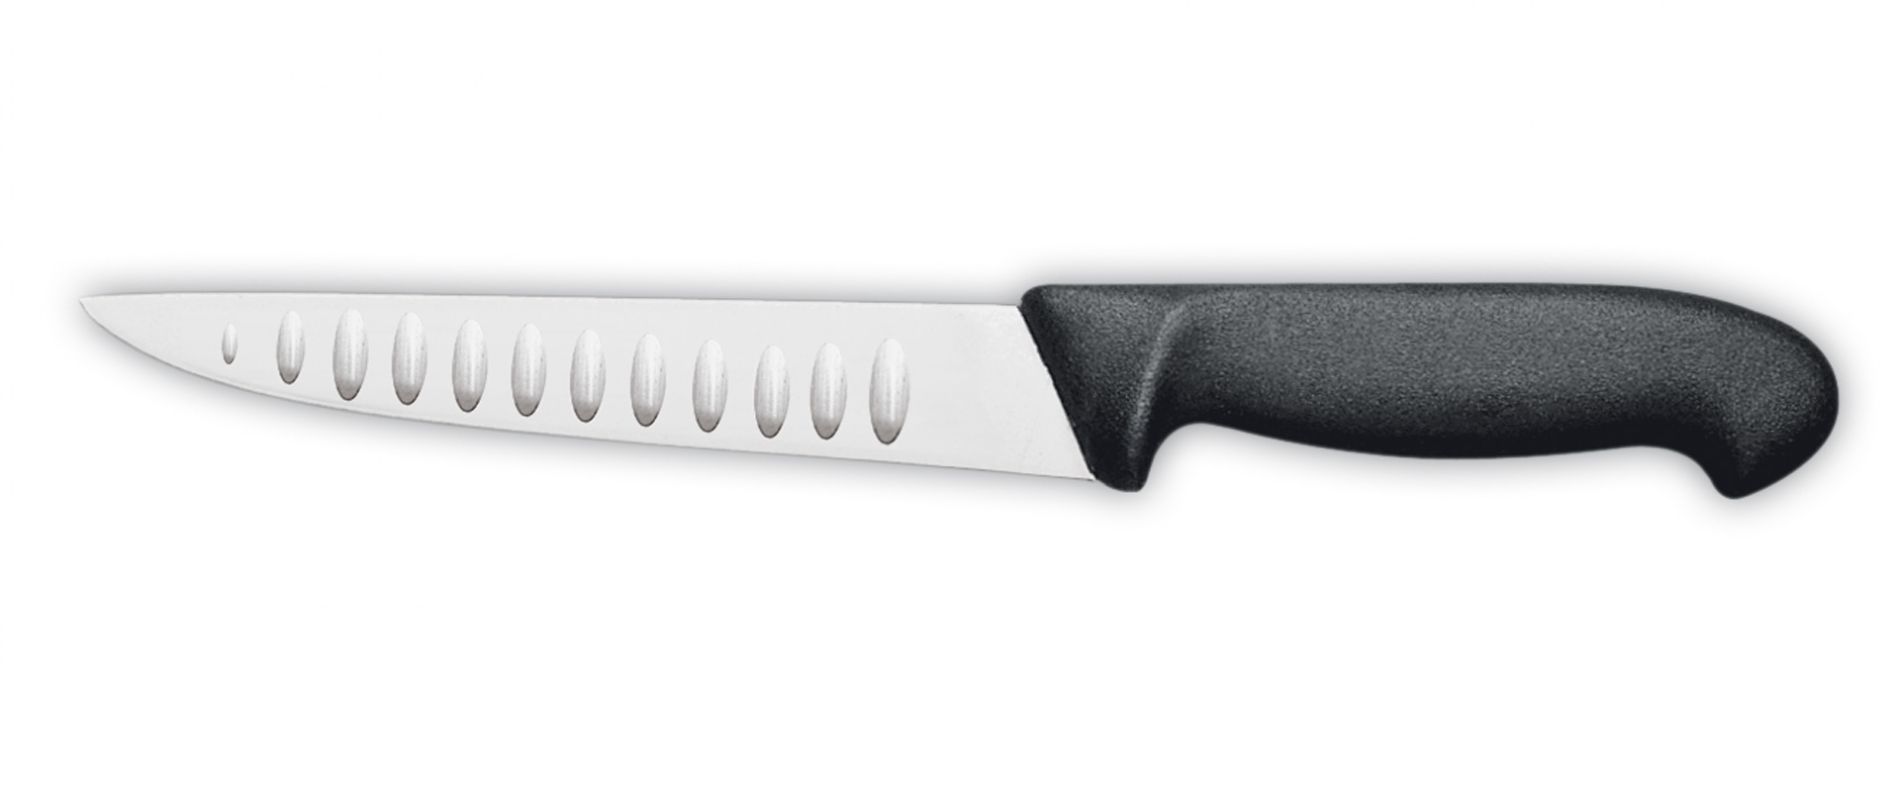 Cuchillo GIESSER para pinchar, hoja 16cm, ancha, rígida, con alveólos, mango clásico,  negro